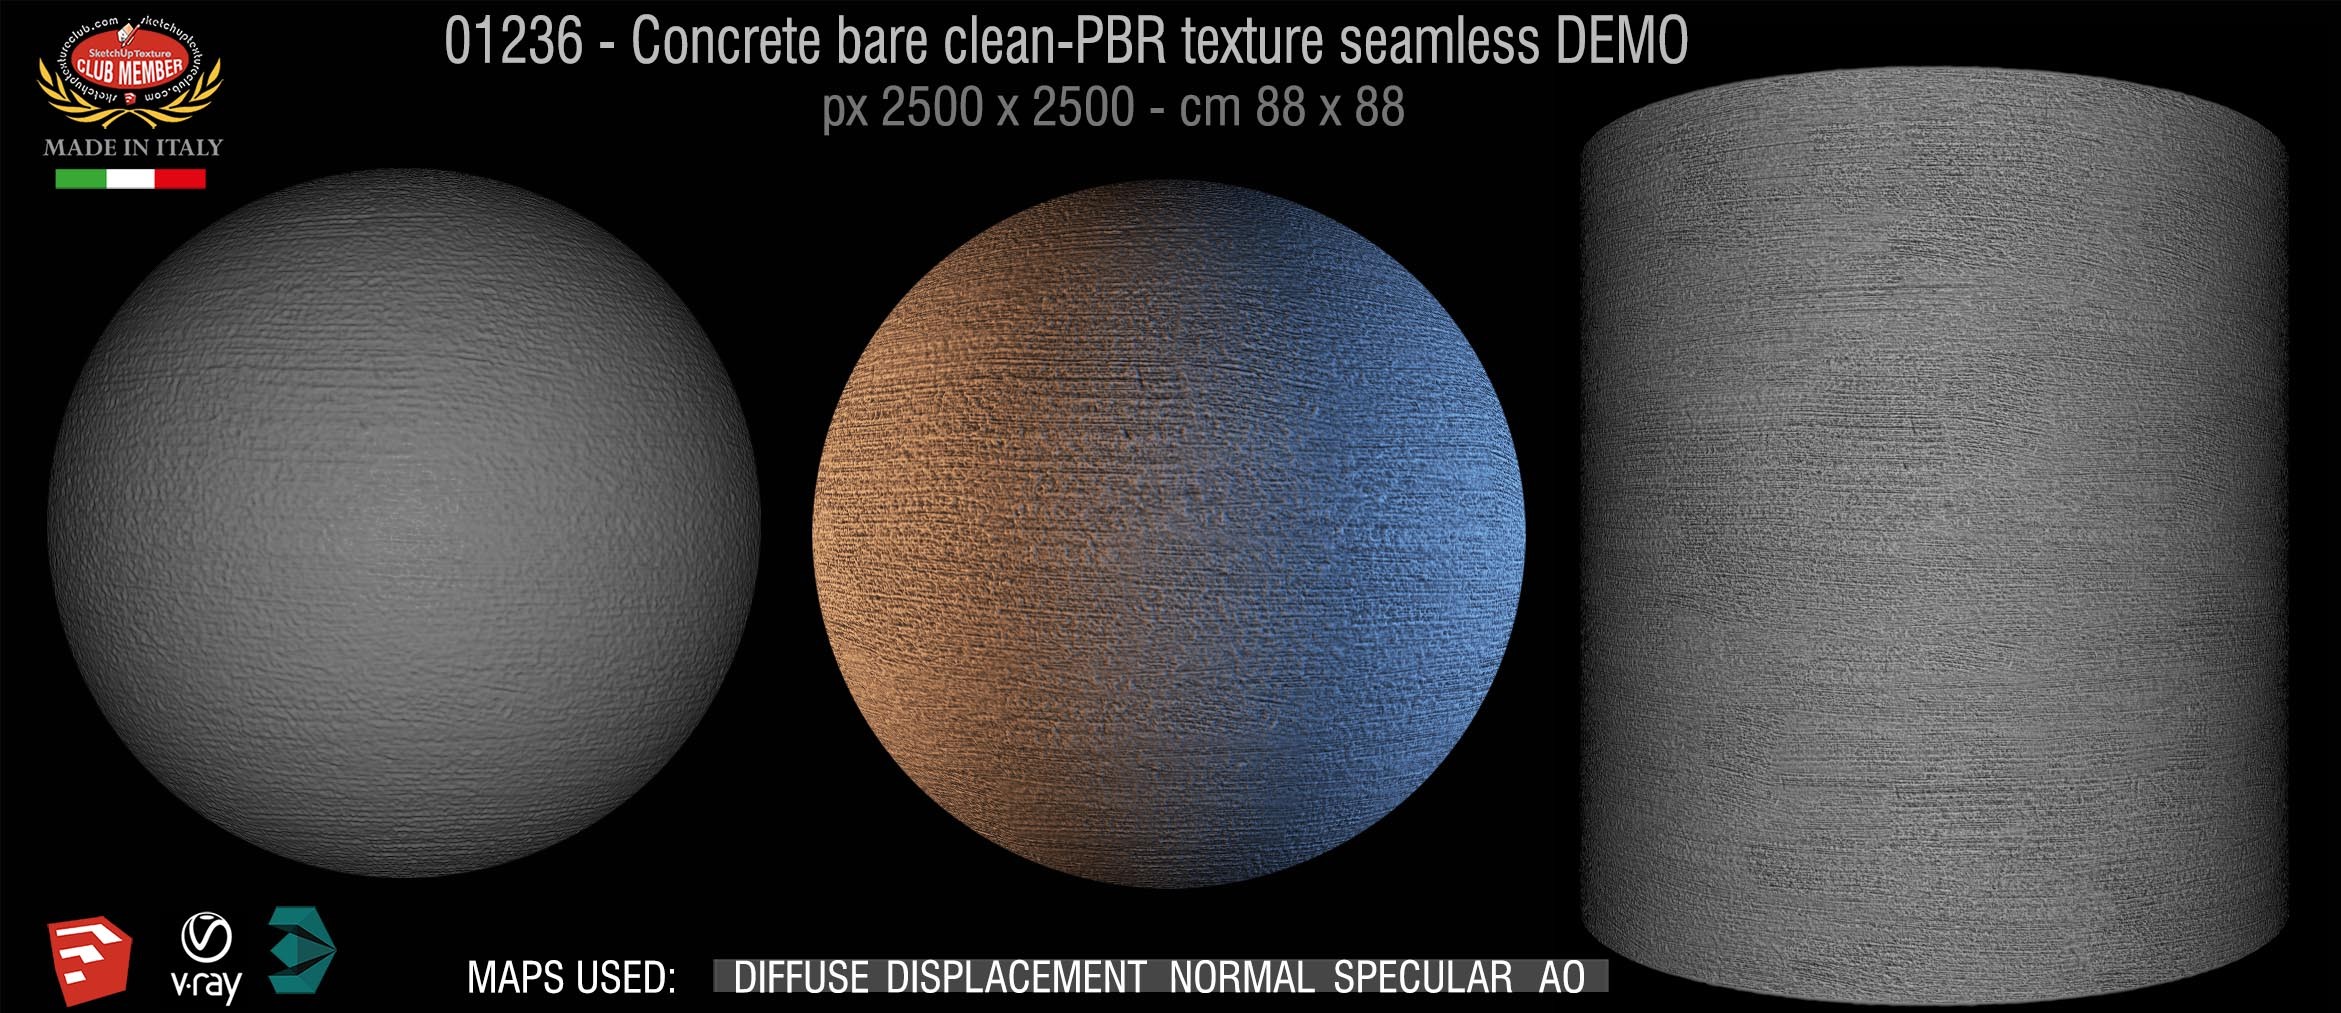 01236 Concrete bare clean-PBR texture seamless DEMO